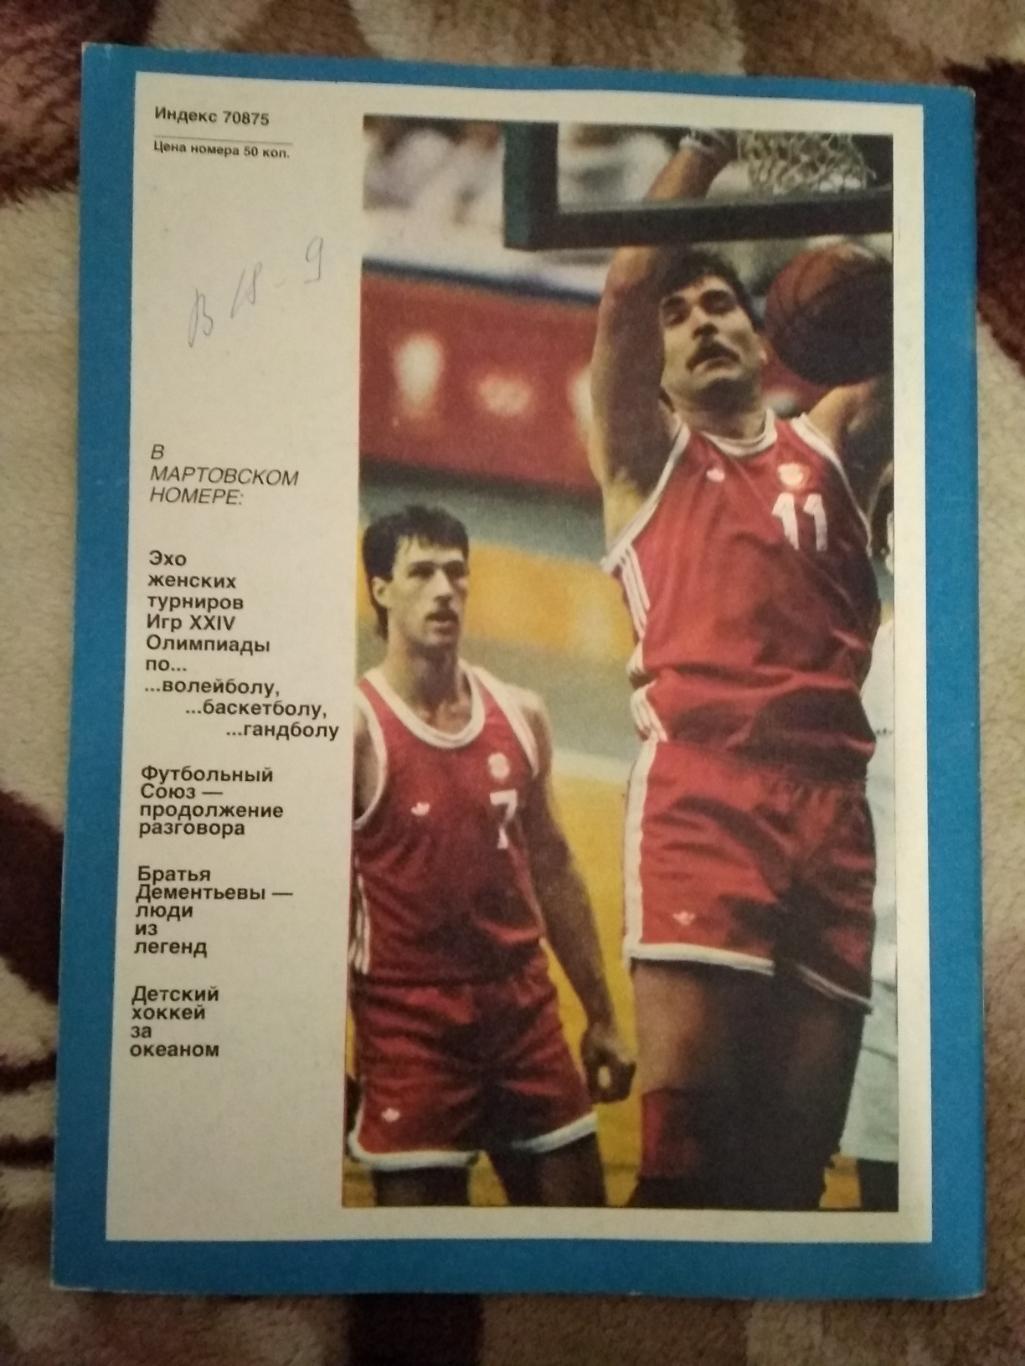 Журнал.Спортивные игры № 2 1989 г. 1